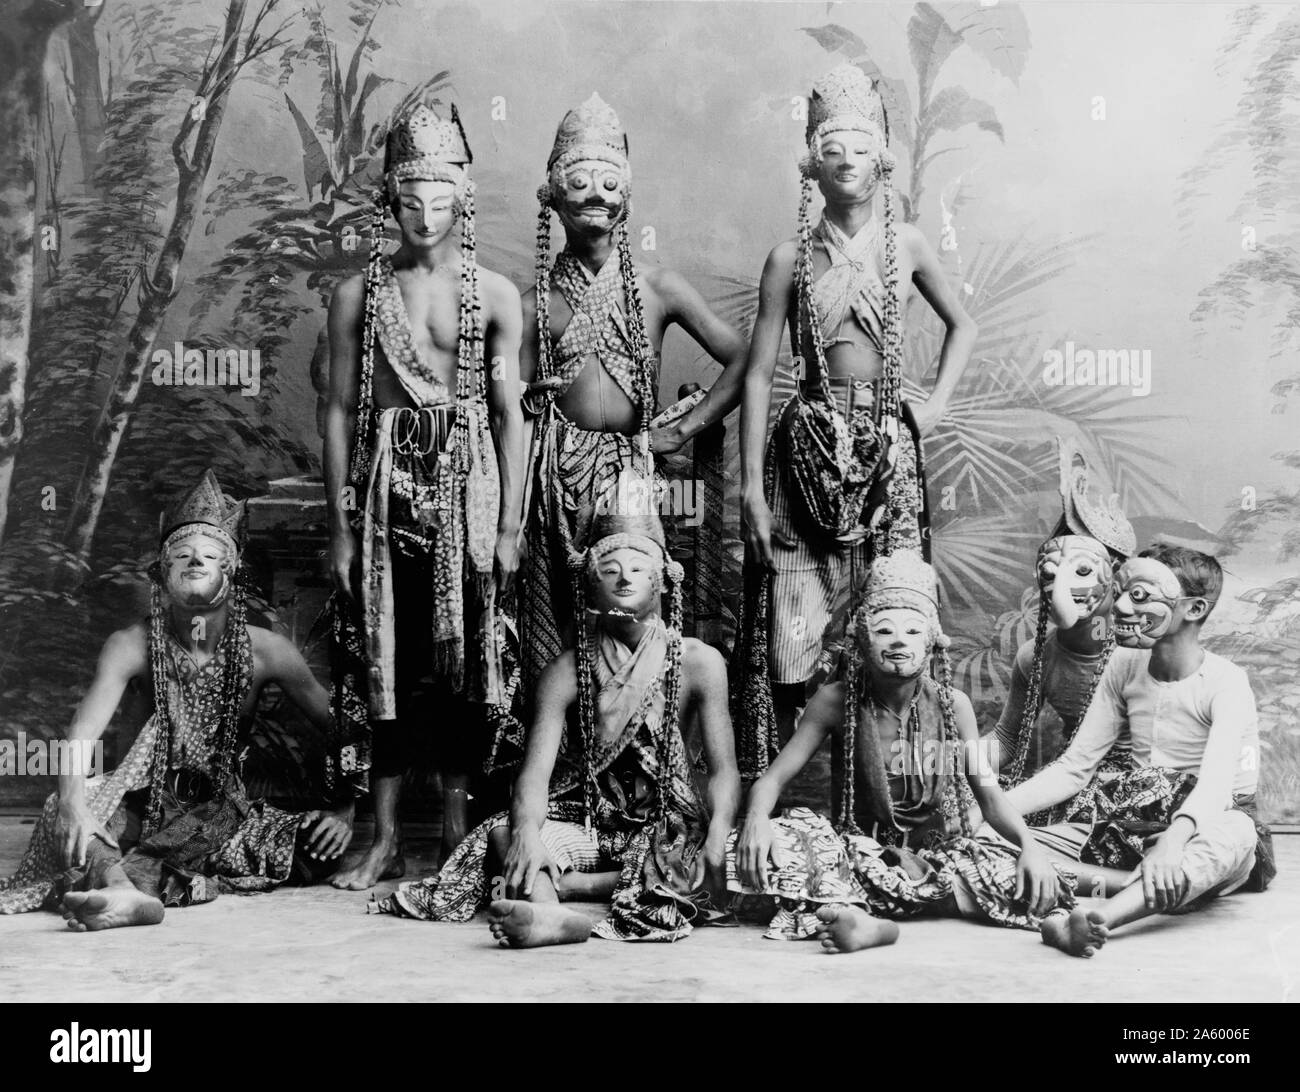 Fotodruck von maskierten Männern des Theaters, die in 'Topéing', Java, Indonesien. Datiert 1910 Stockfoto